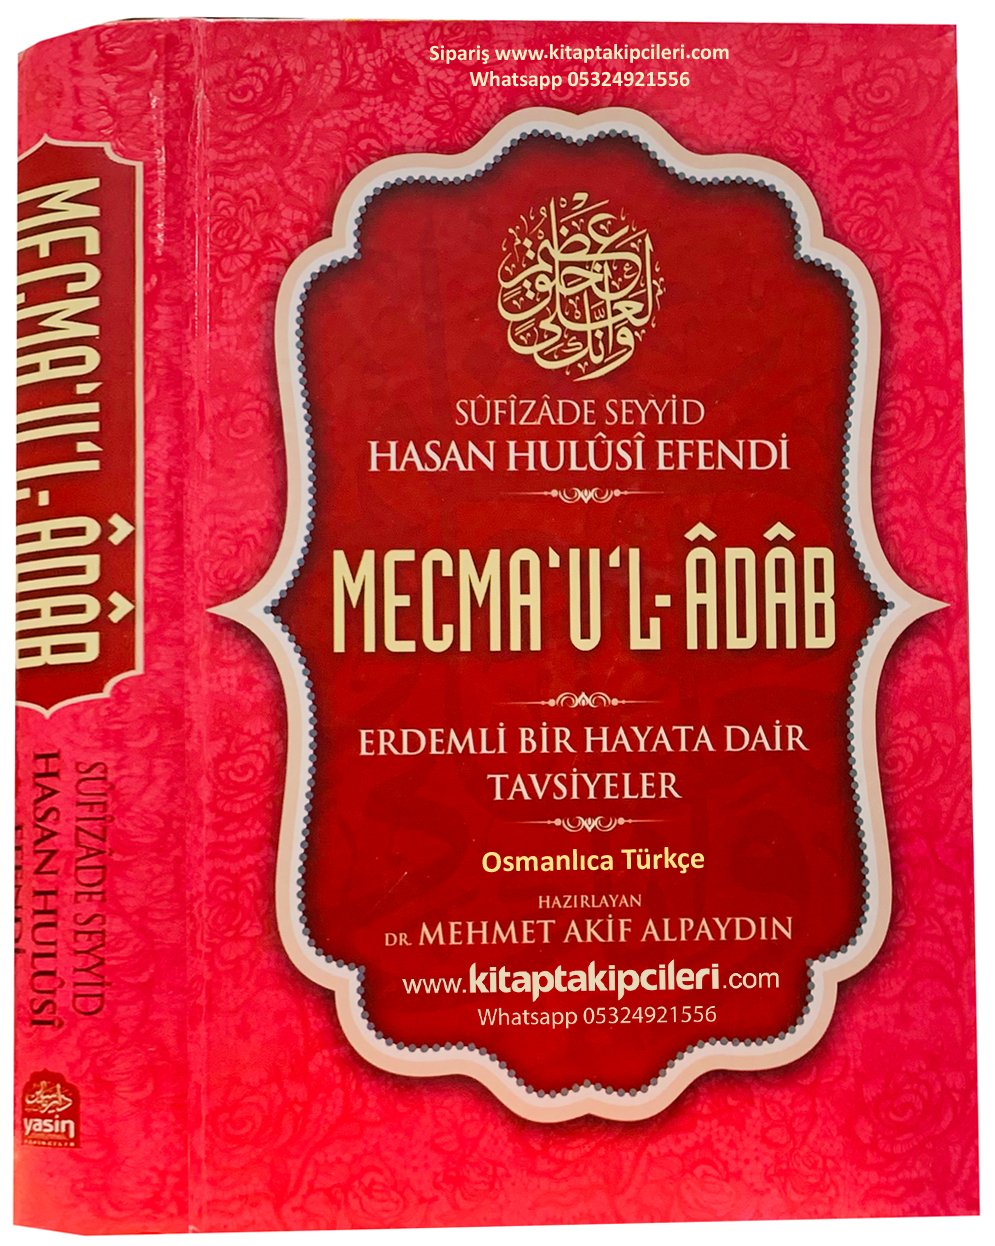 Mecmaul Adab Sufizade Seyyid Hasan Hulusi Efendi, Erdemli Bir Hayata Dair Tavsiyeler, Türkçe Osmanlıca, 655 Sayfa